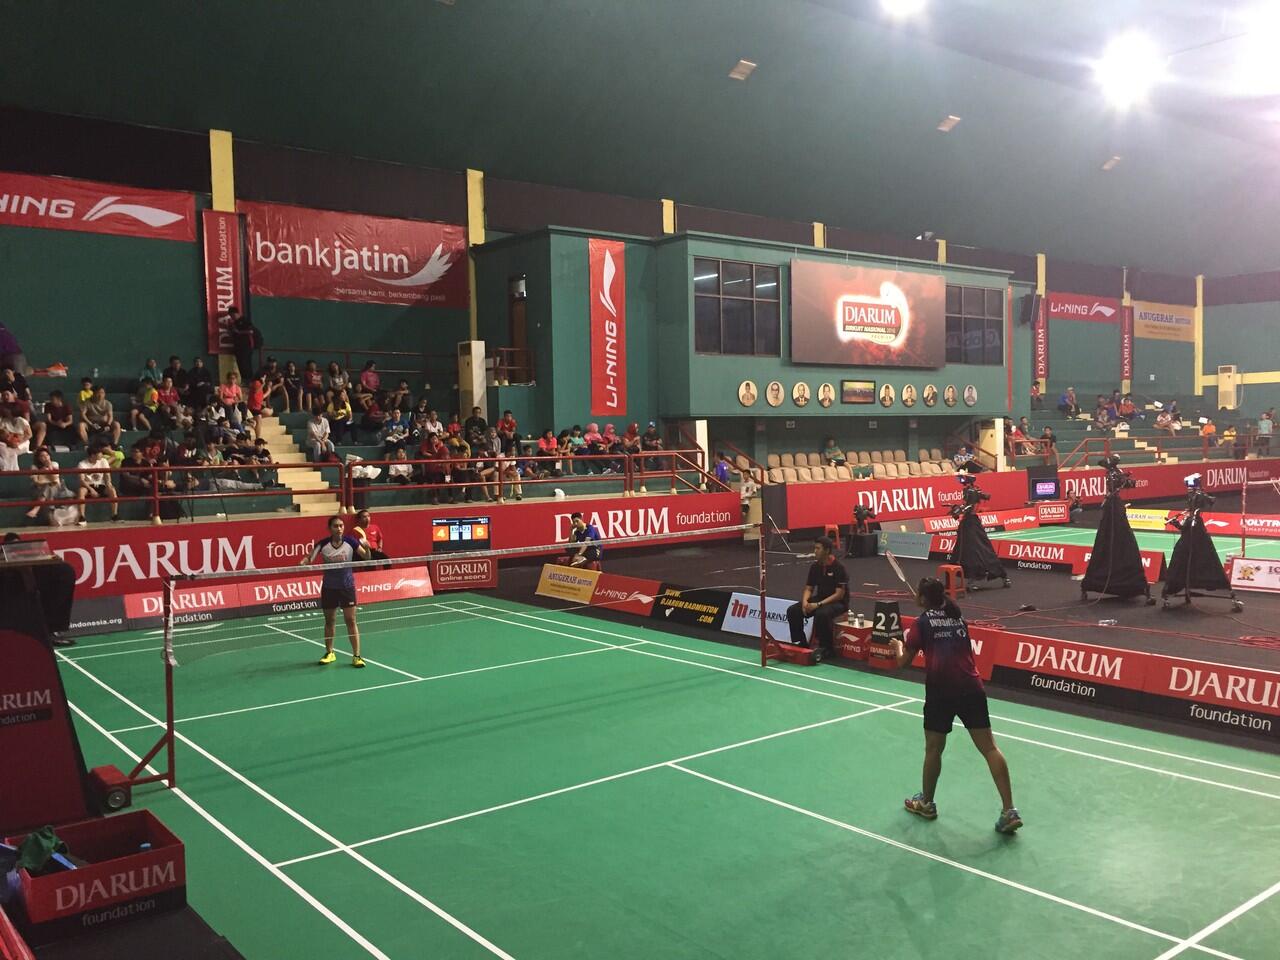 &#91;Field Report&#93; Acara Keren di Djarum Badminton Sirkuit Nasional 2016 Surabaya